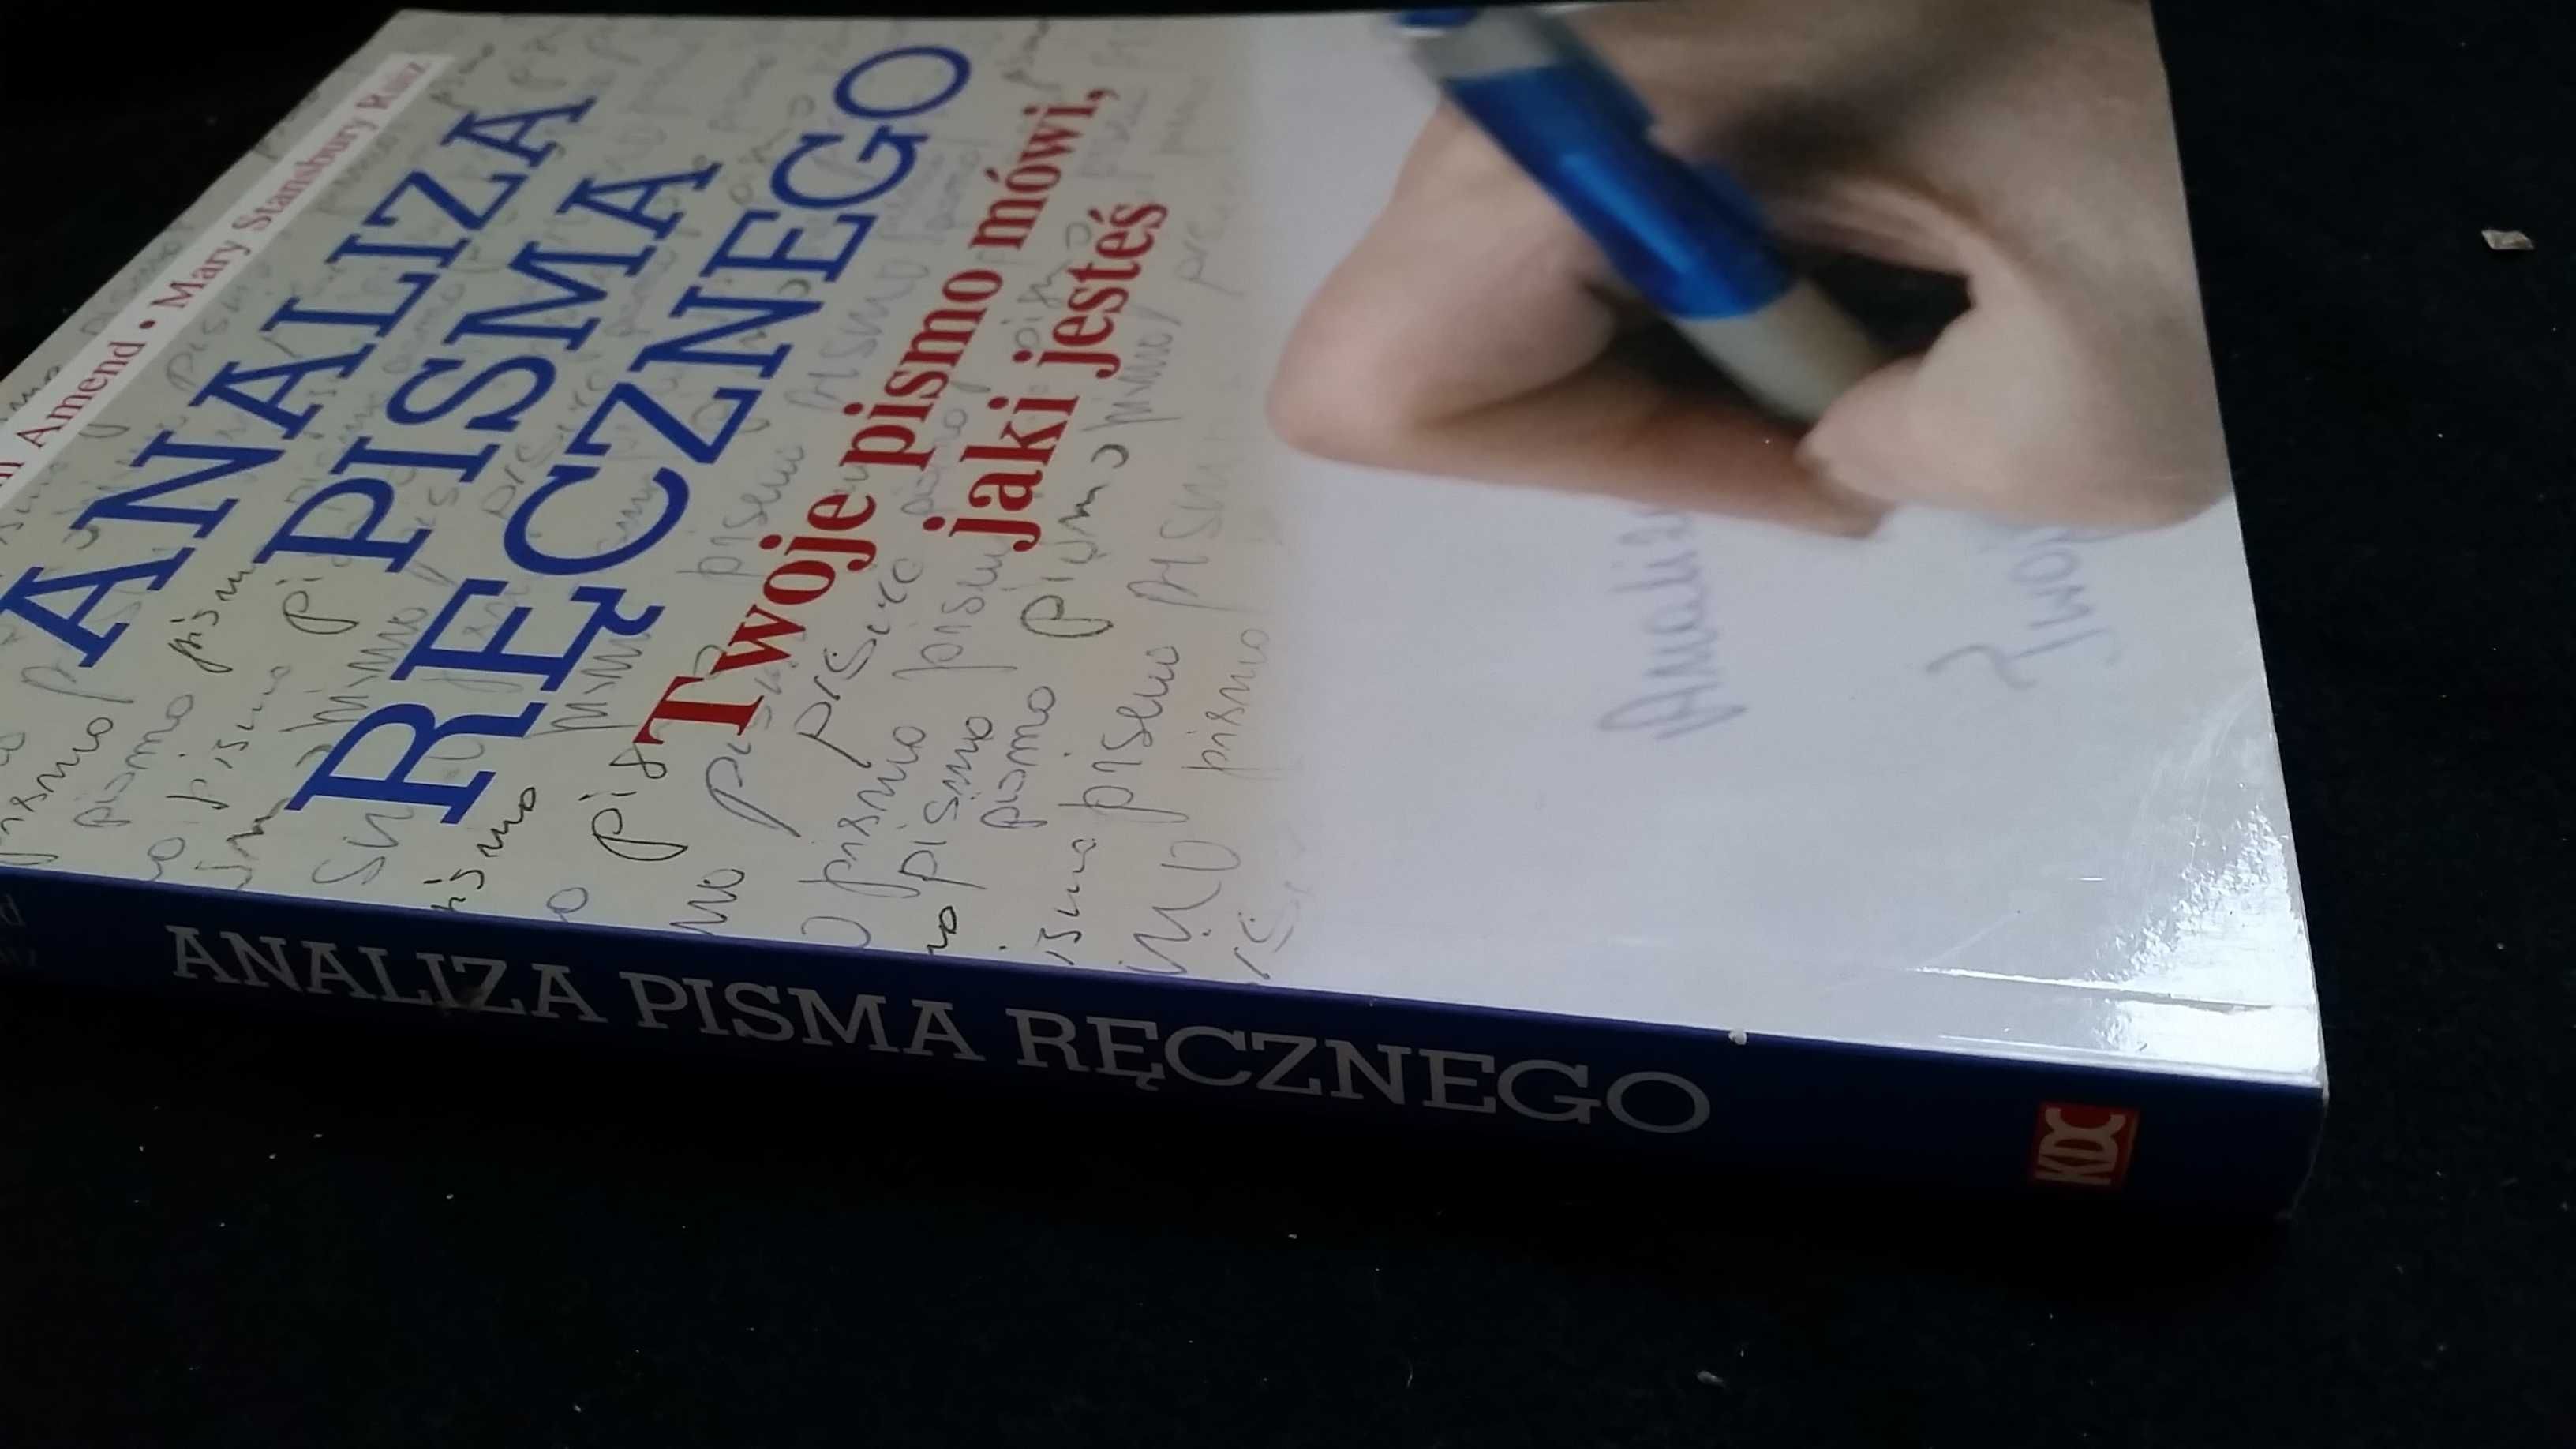 książka "Analiza pisma ręcznego" K.K. Amend, M.S. Ruiz Grafologia